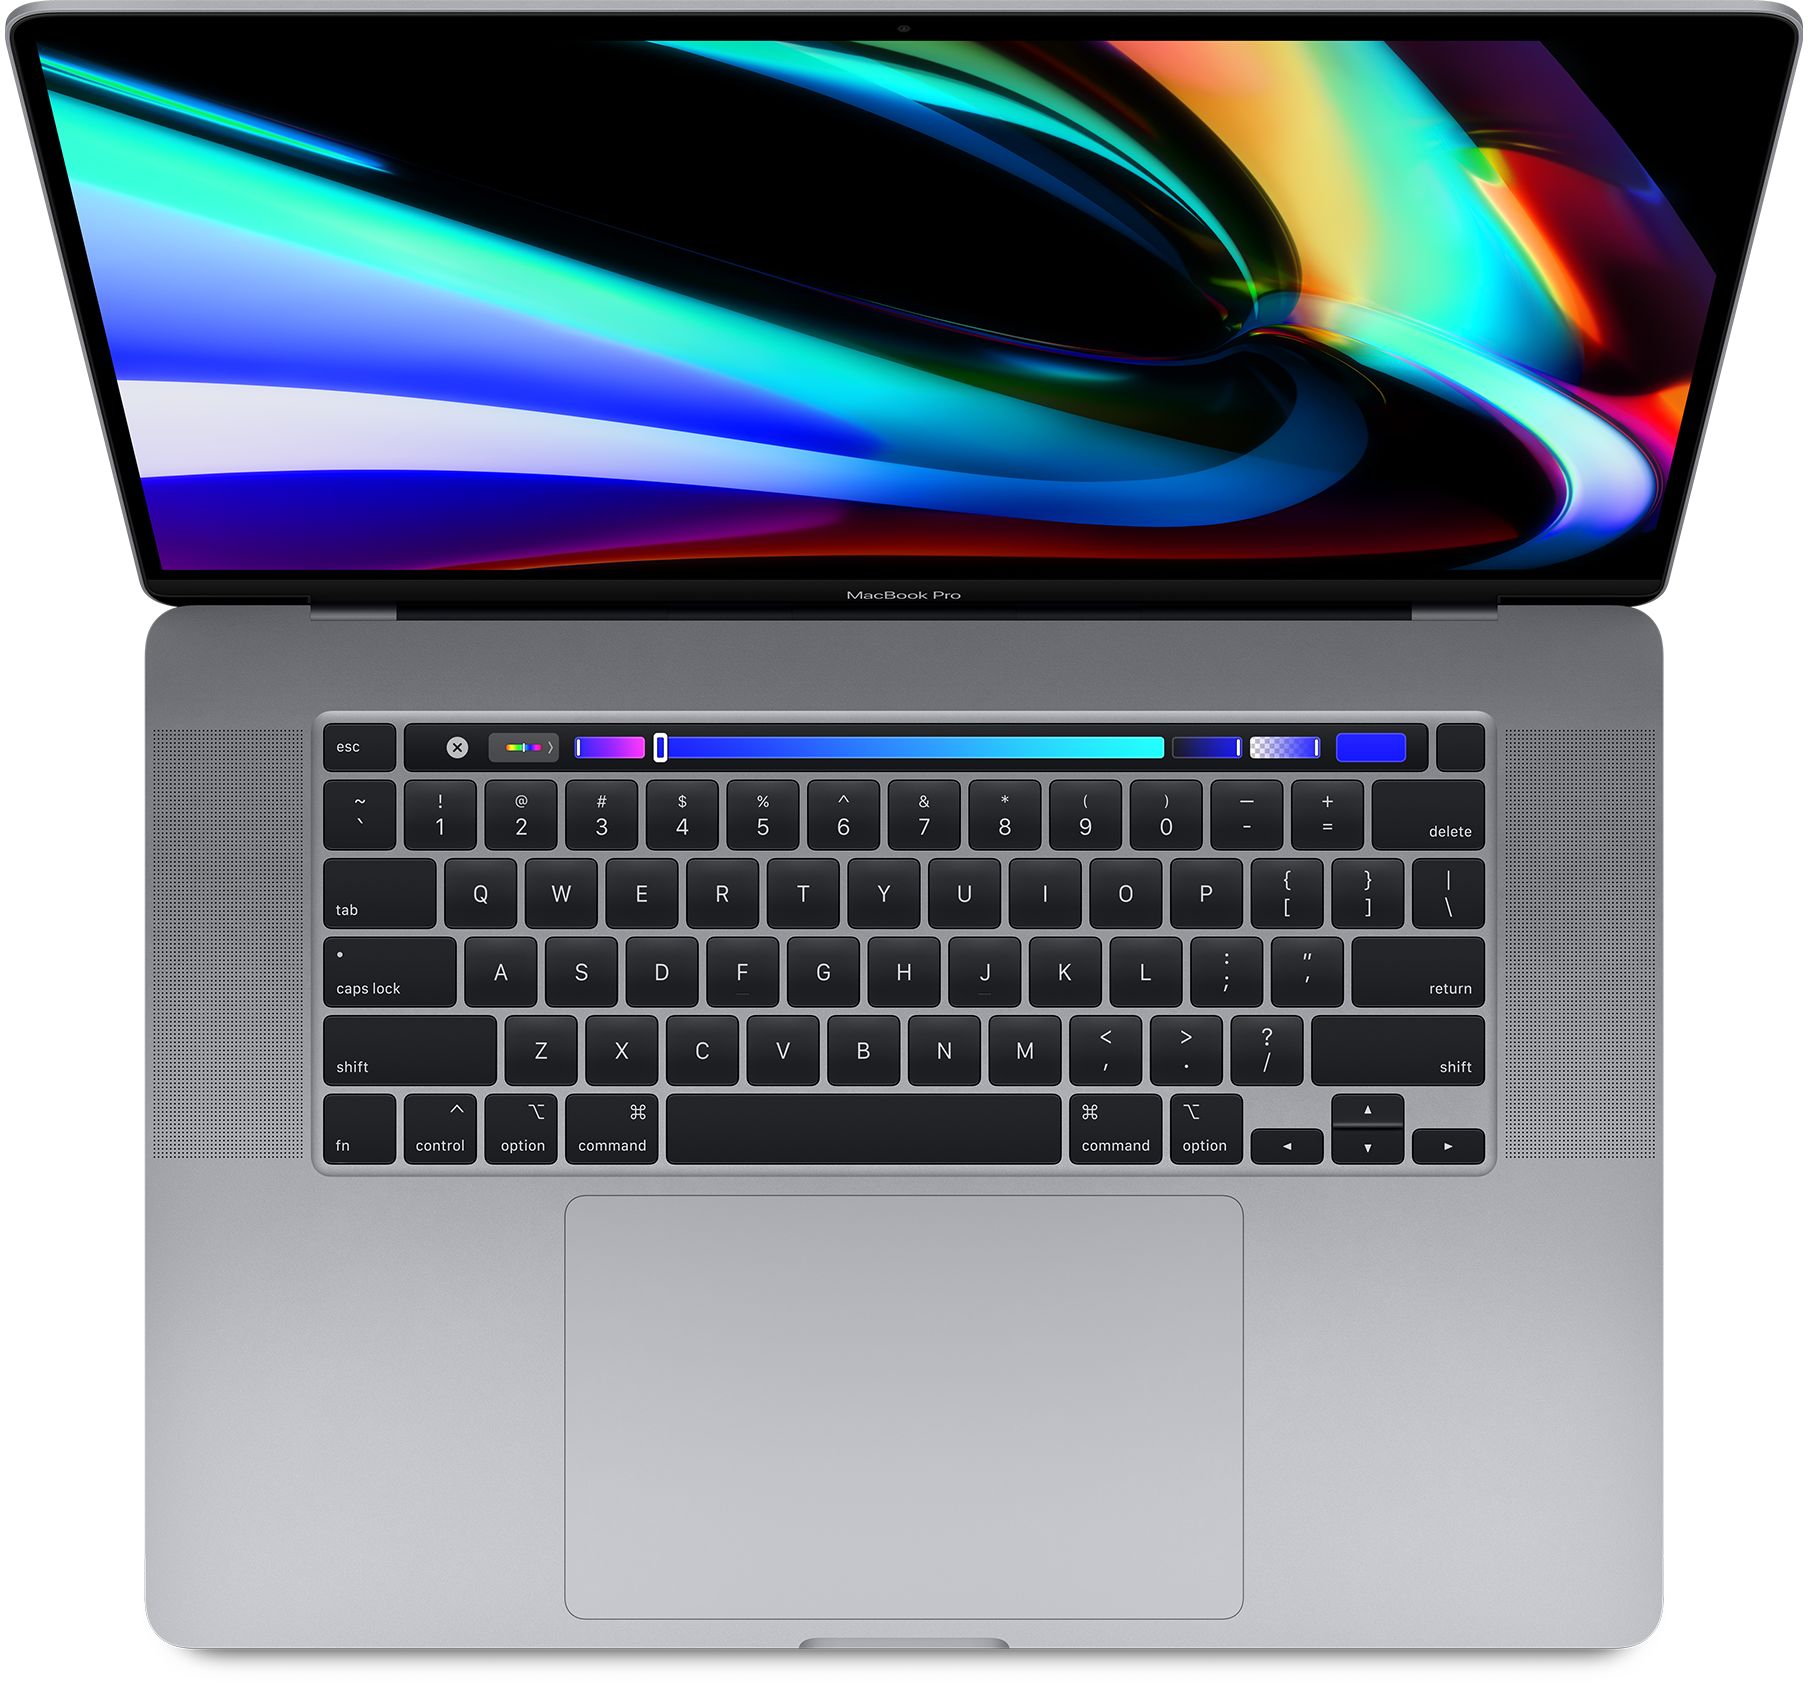 MacBook Pro 15.4